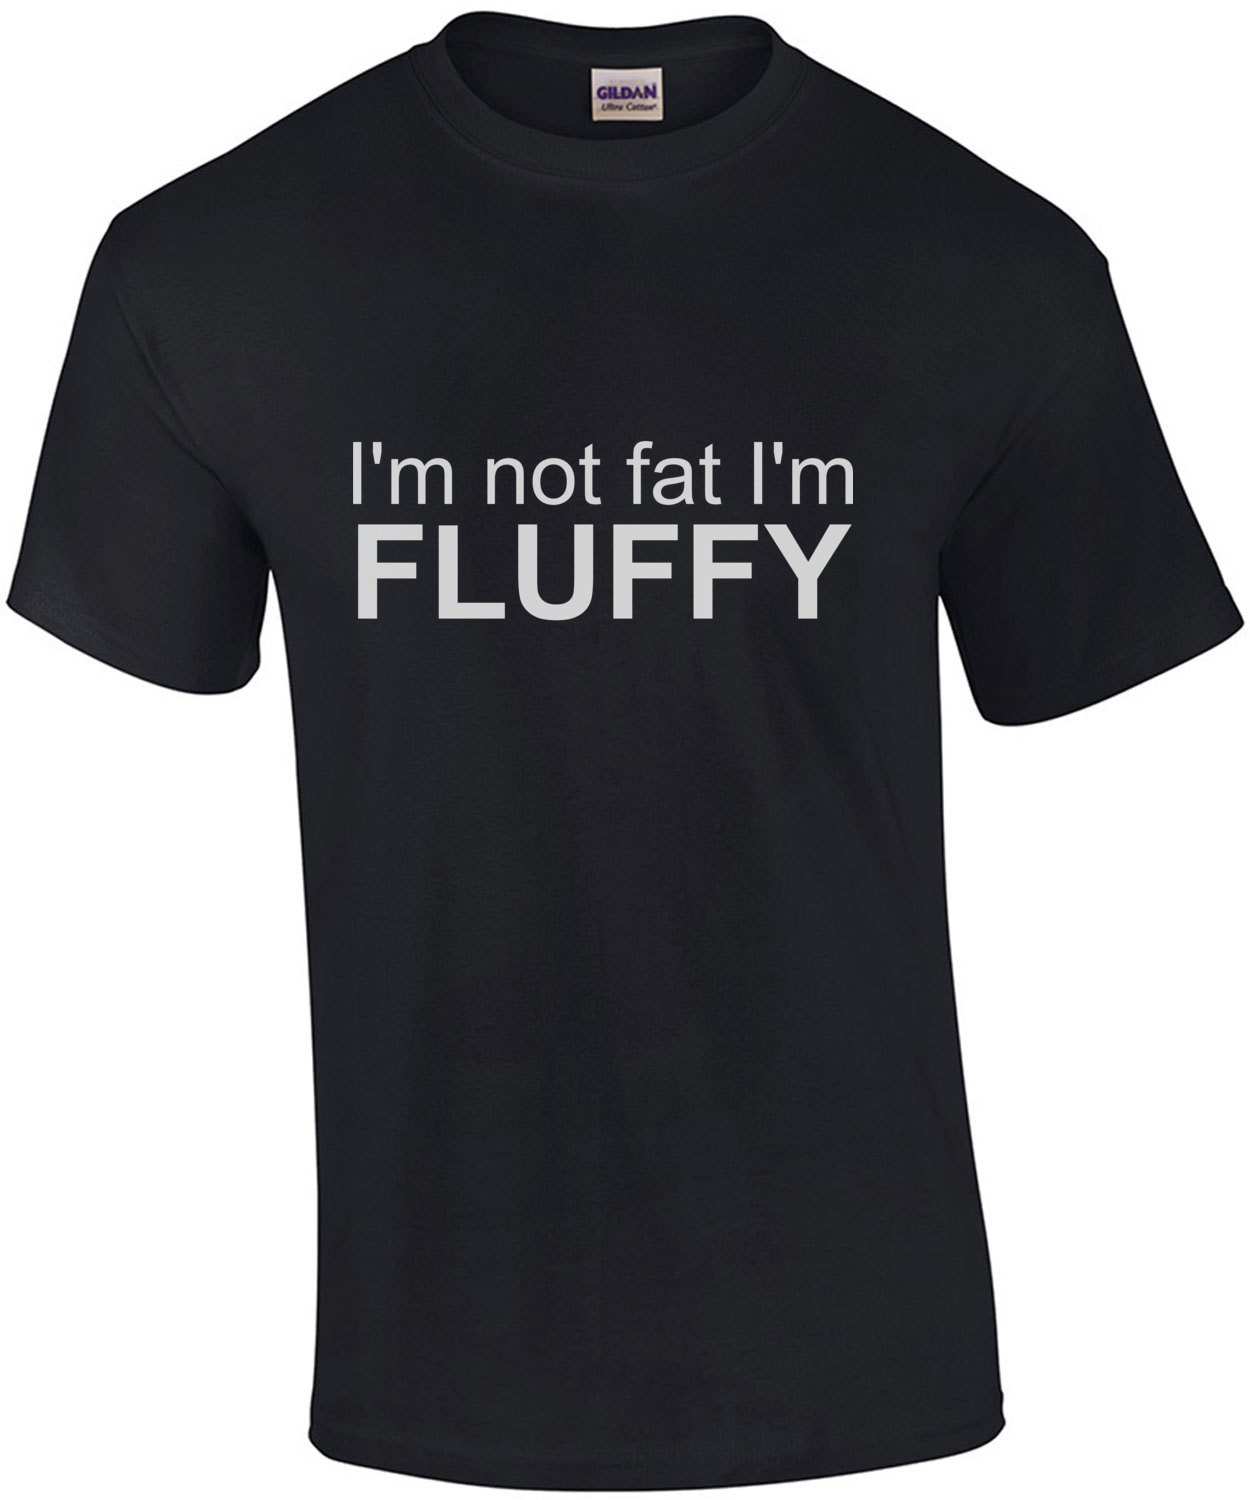 I'm not fat I'm fluffy - fat